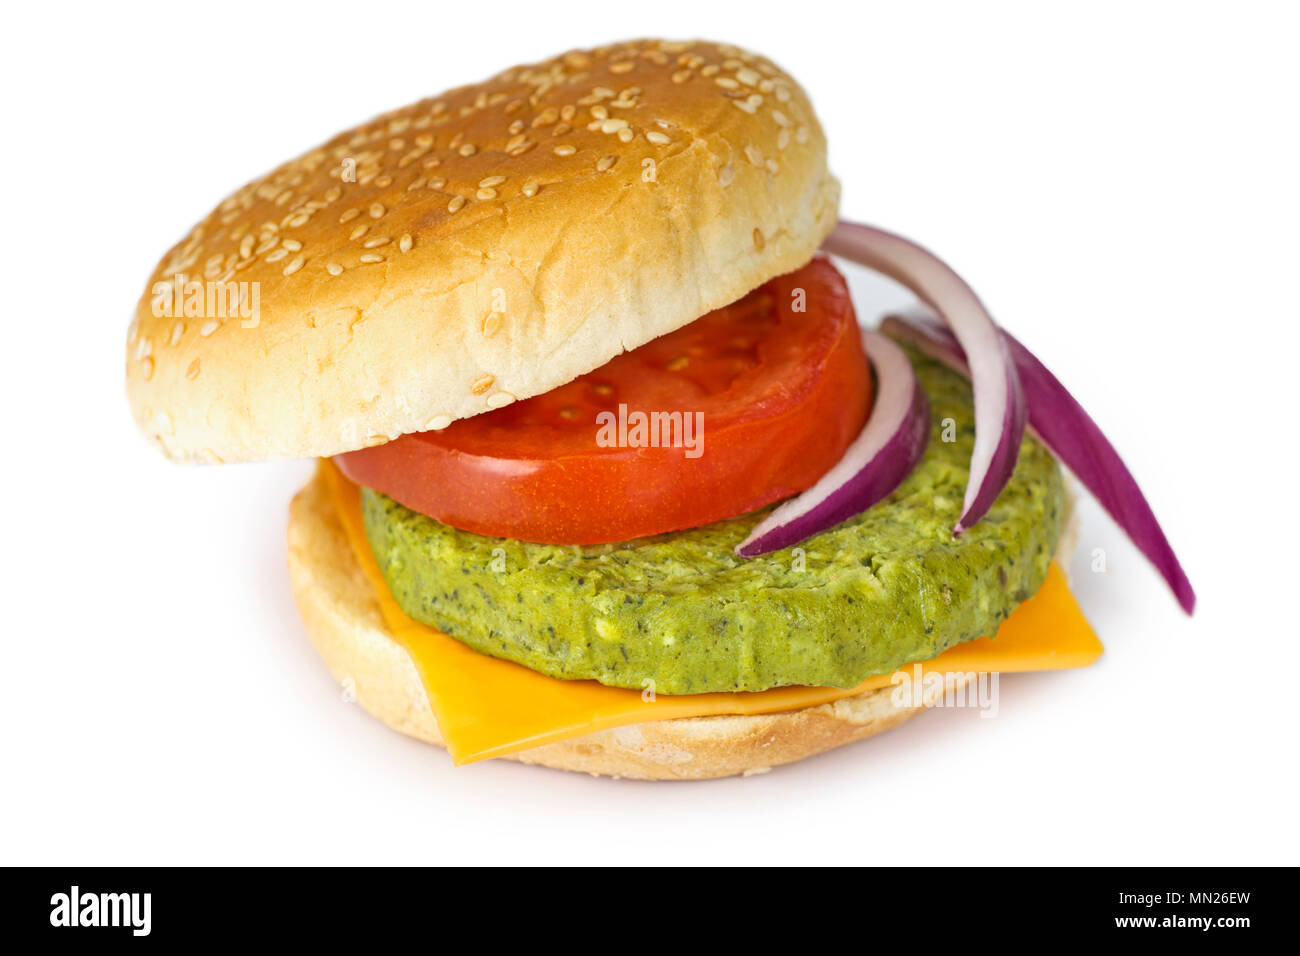 Vegetariano Veggie Burger, Patty con judías verdes, guisantes, espinacas, brócoli Foto de stock